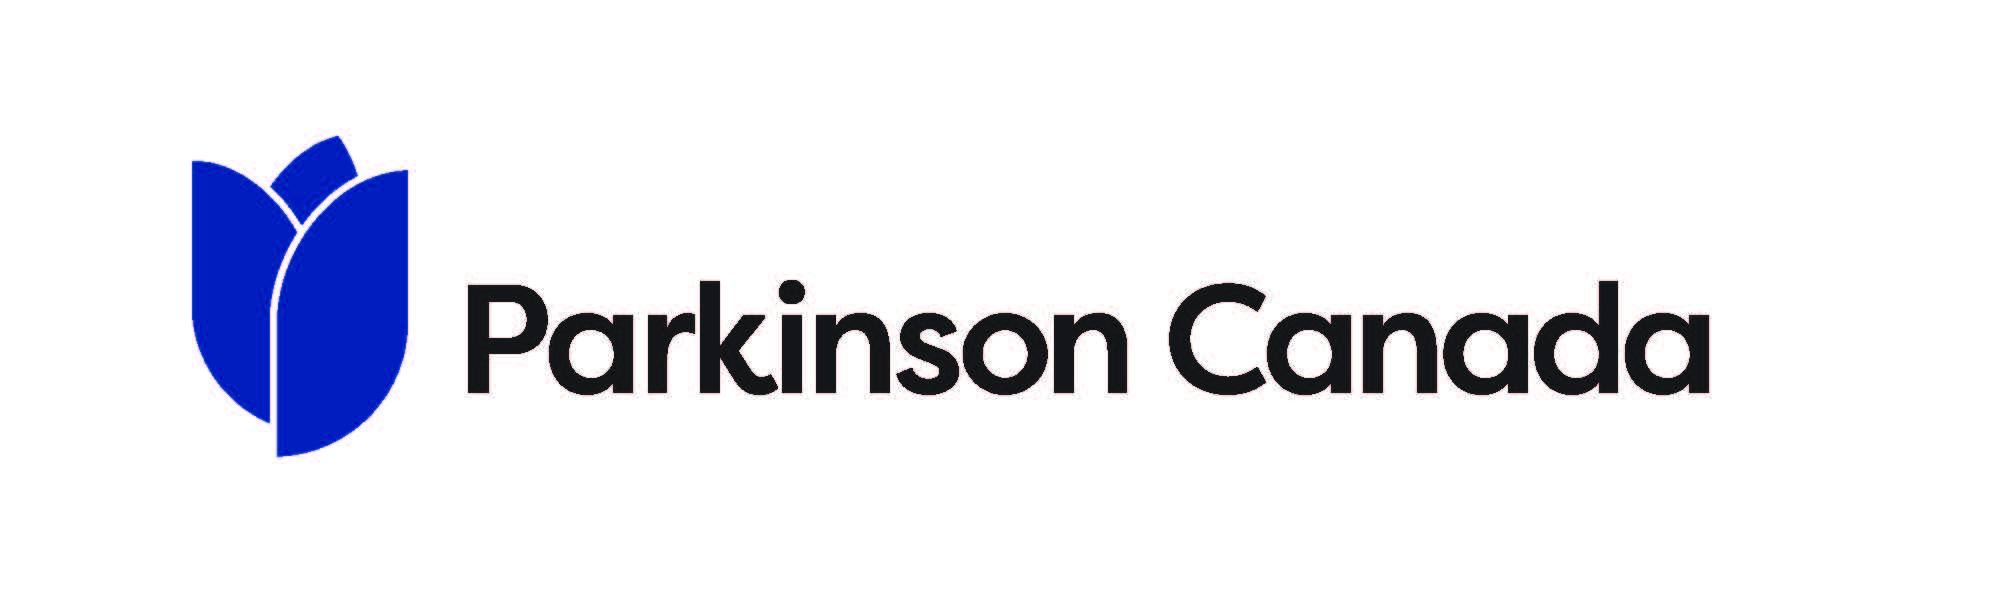 Parkinson Canada Logo